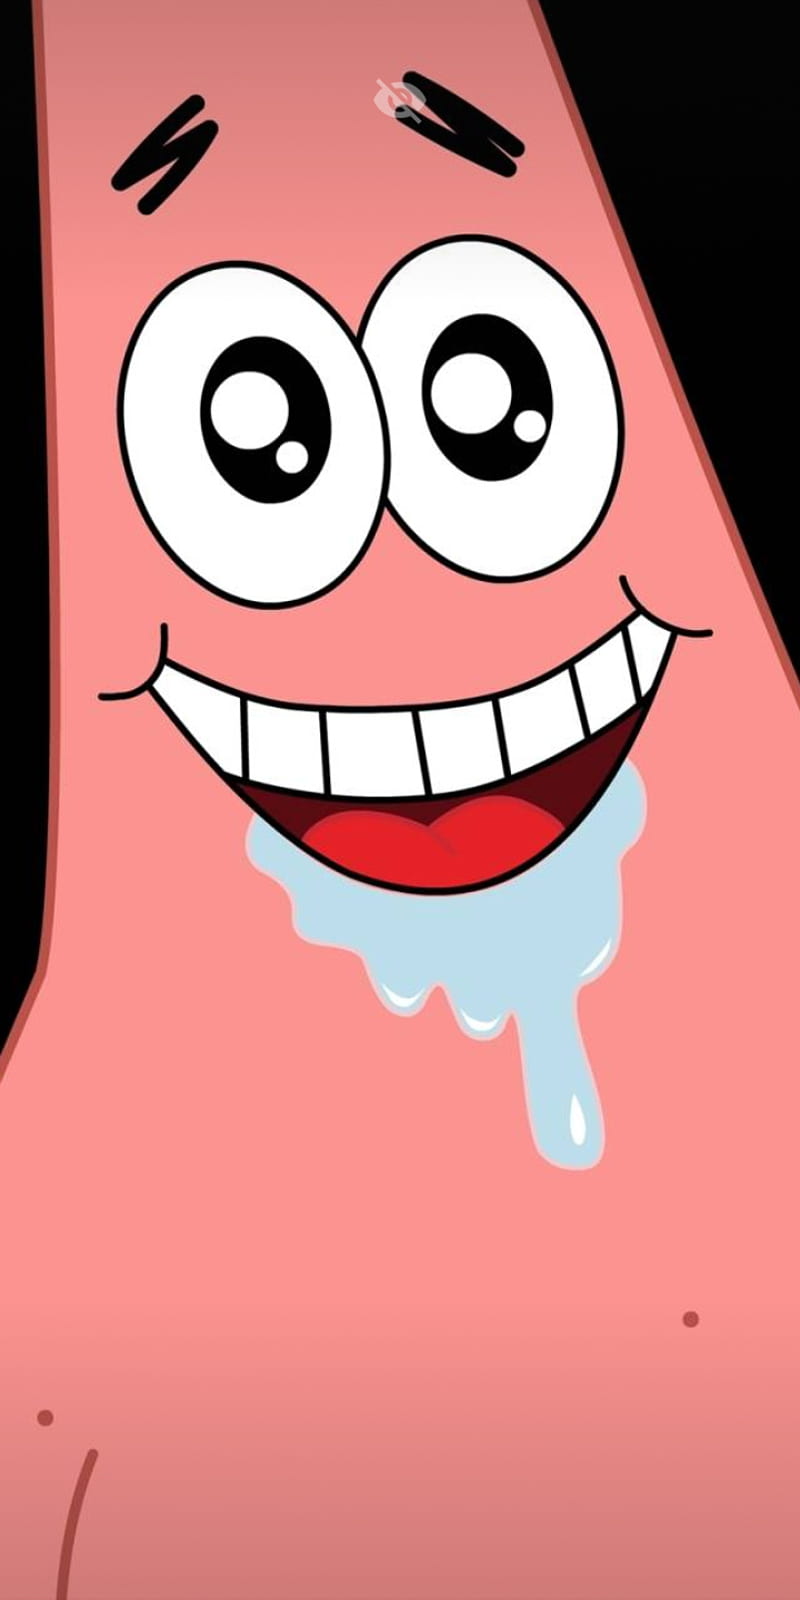 Patrick, aesthetic, cute, meme, pink beret, smile, spongebob squarepants, star, HD phone wallpaper